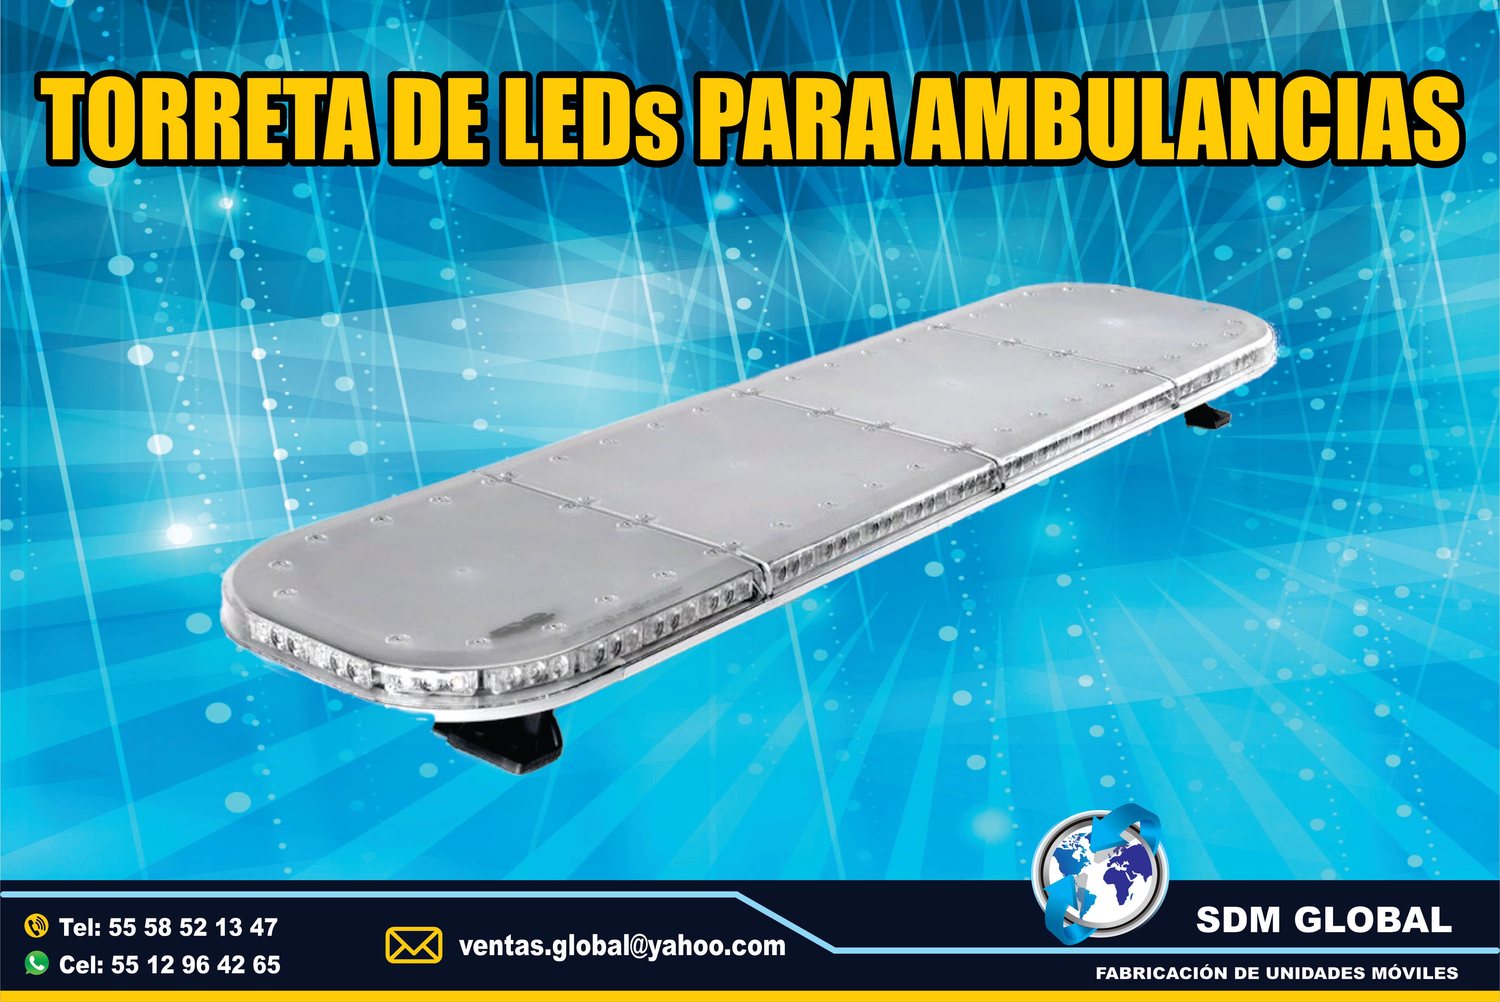 VENTA DE Torreta y equipo para ambulancias MARCA Epcom System 